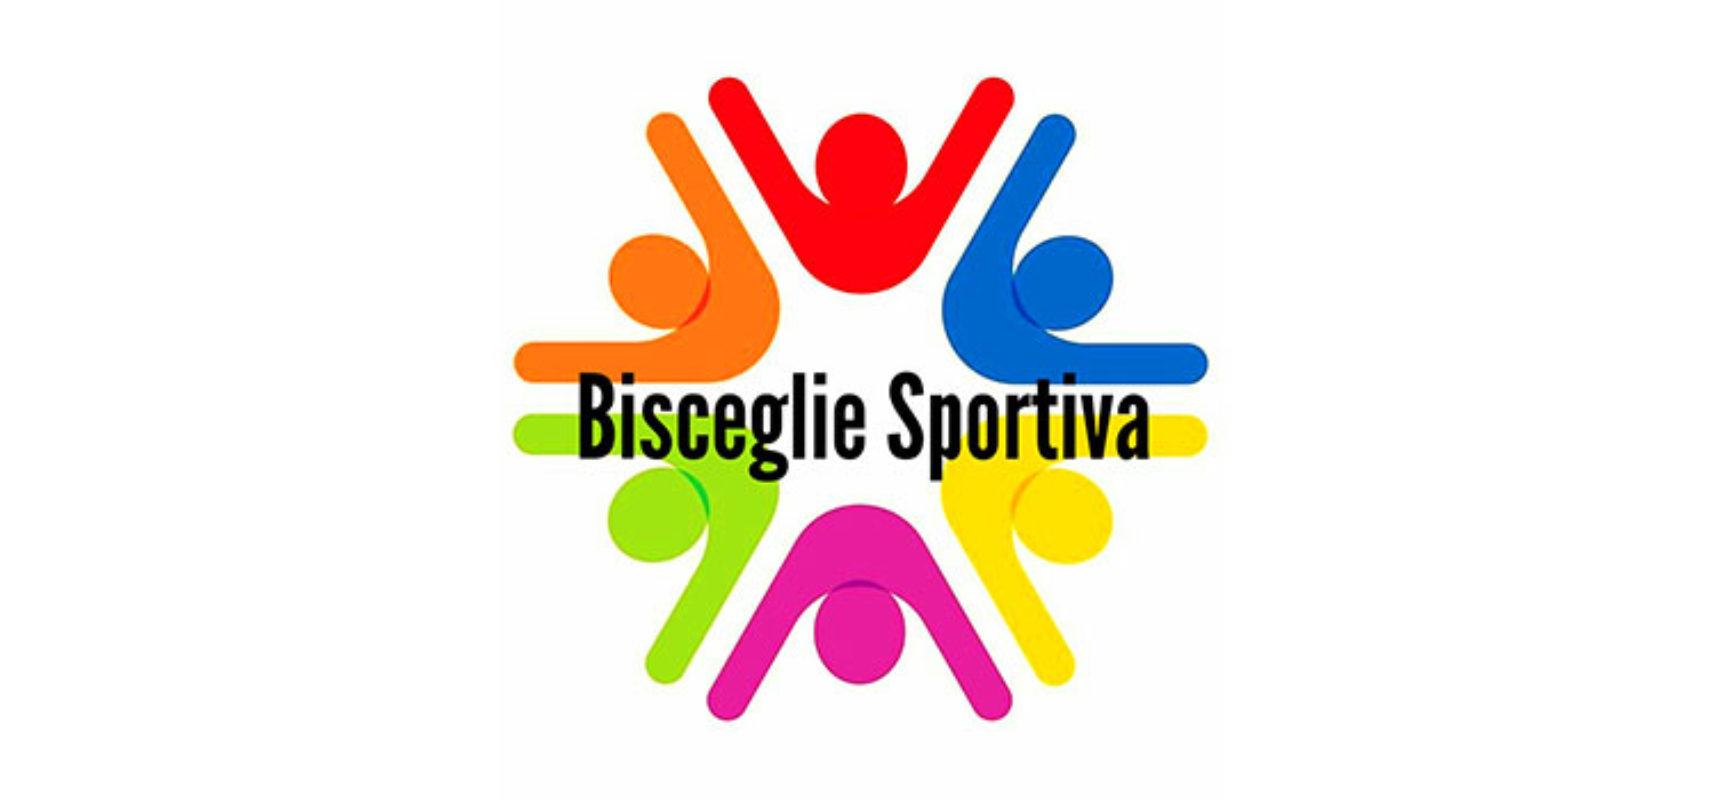 Nasce Bisceglie Sportiva, Anellino e Galantino aderiscono al polo di Spina